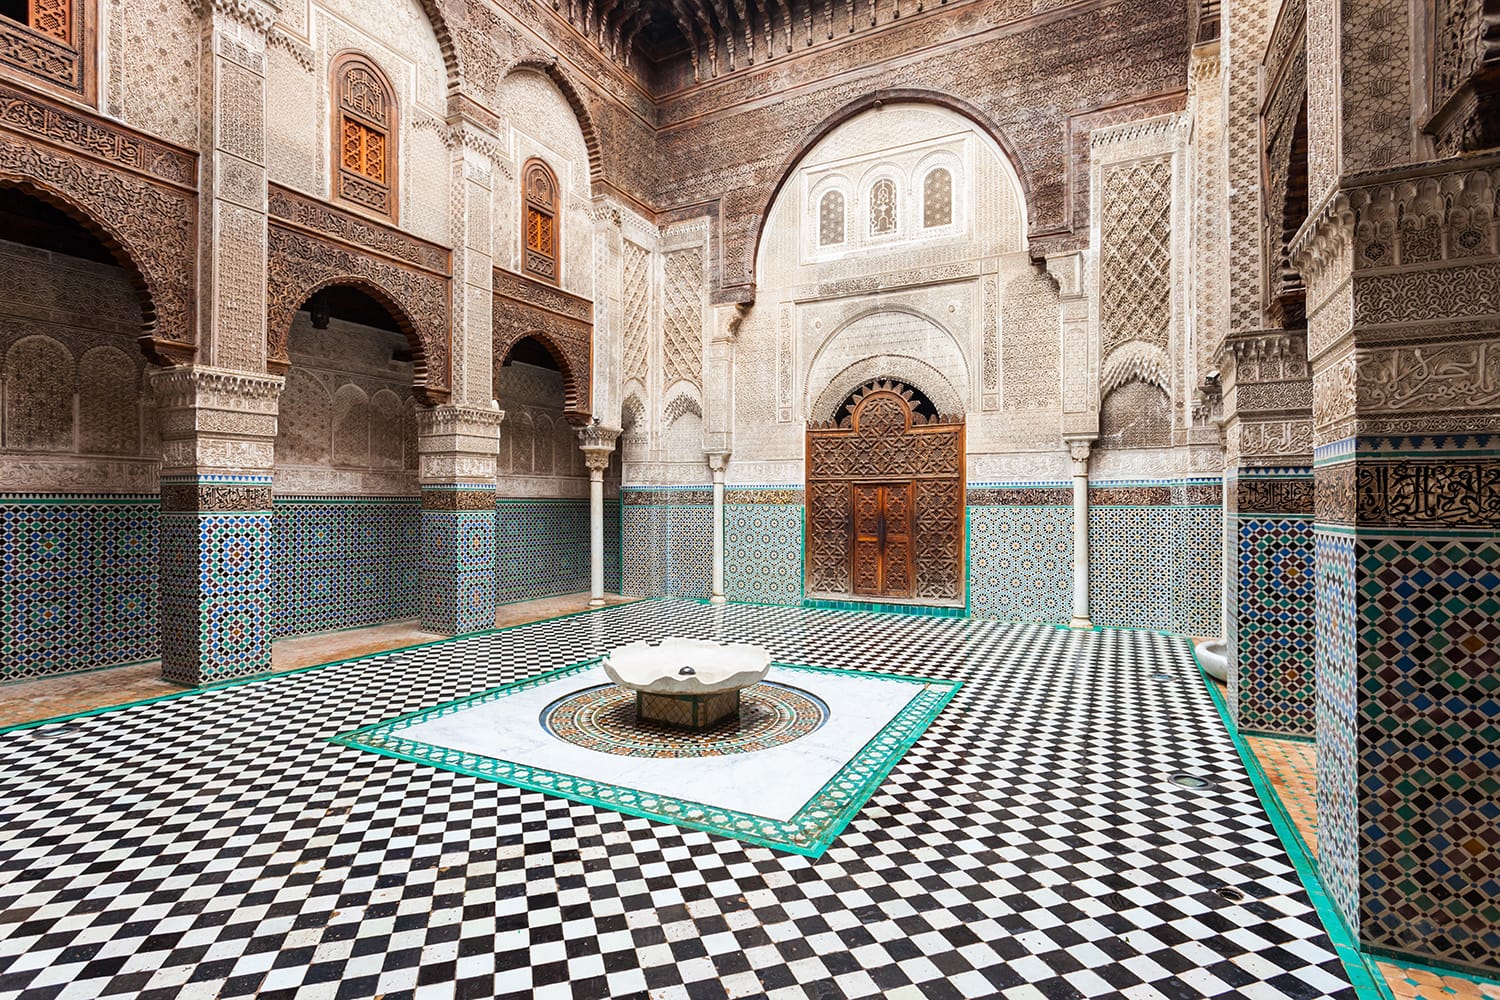 The Al-Attarine Madrasa is a madrasa in Fez medina in Morocco